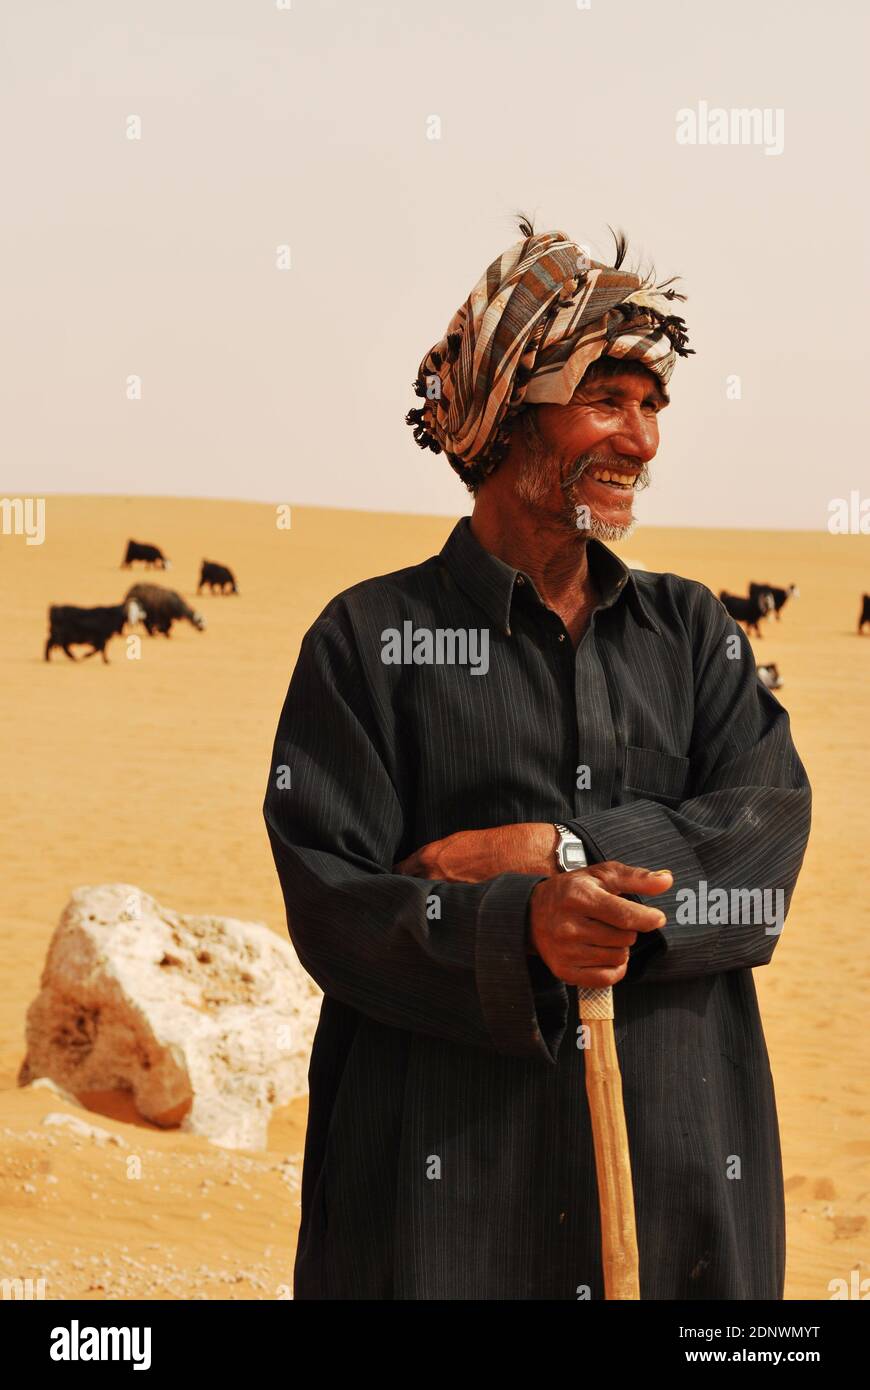 Shepherd of Saudi Arabia Stock Photo